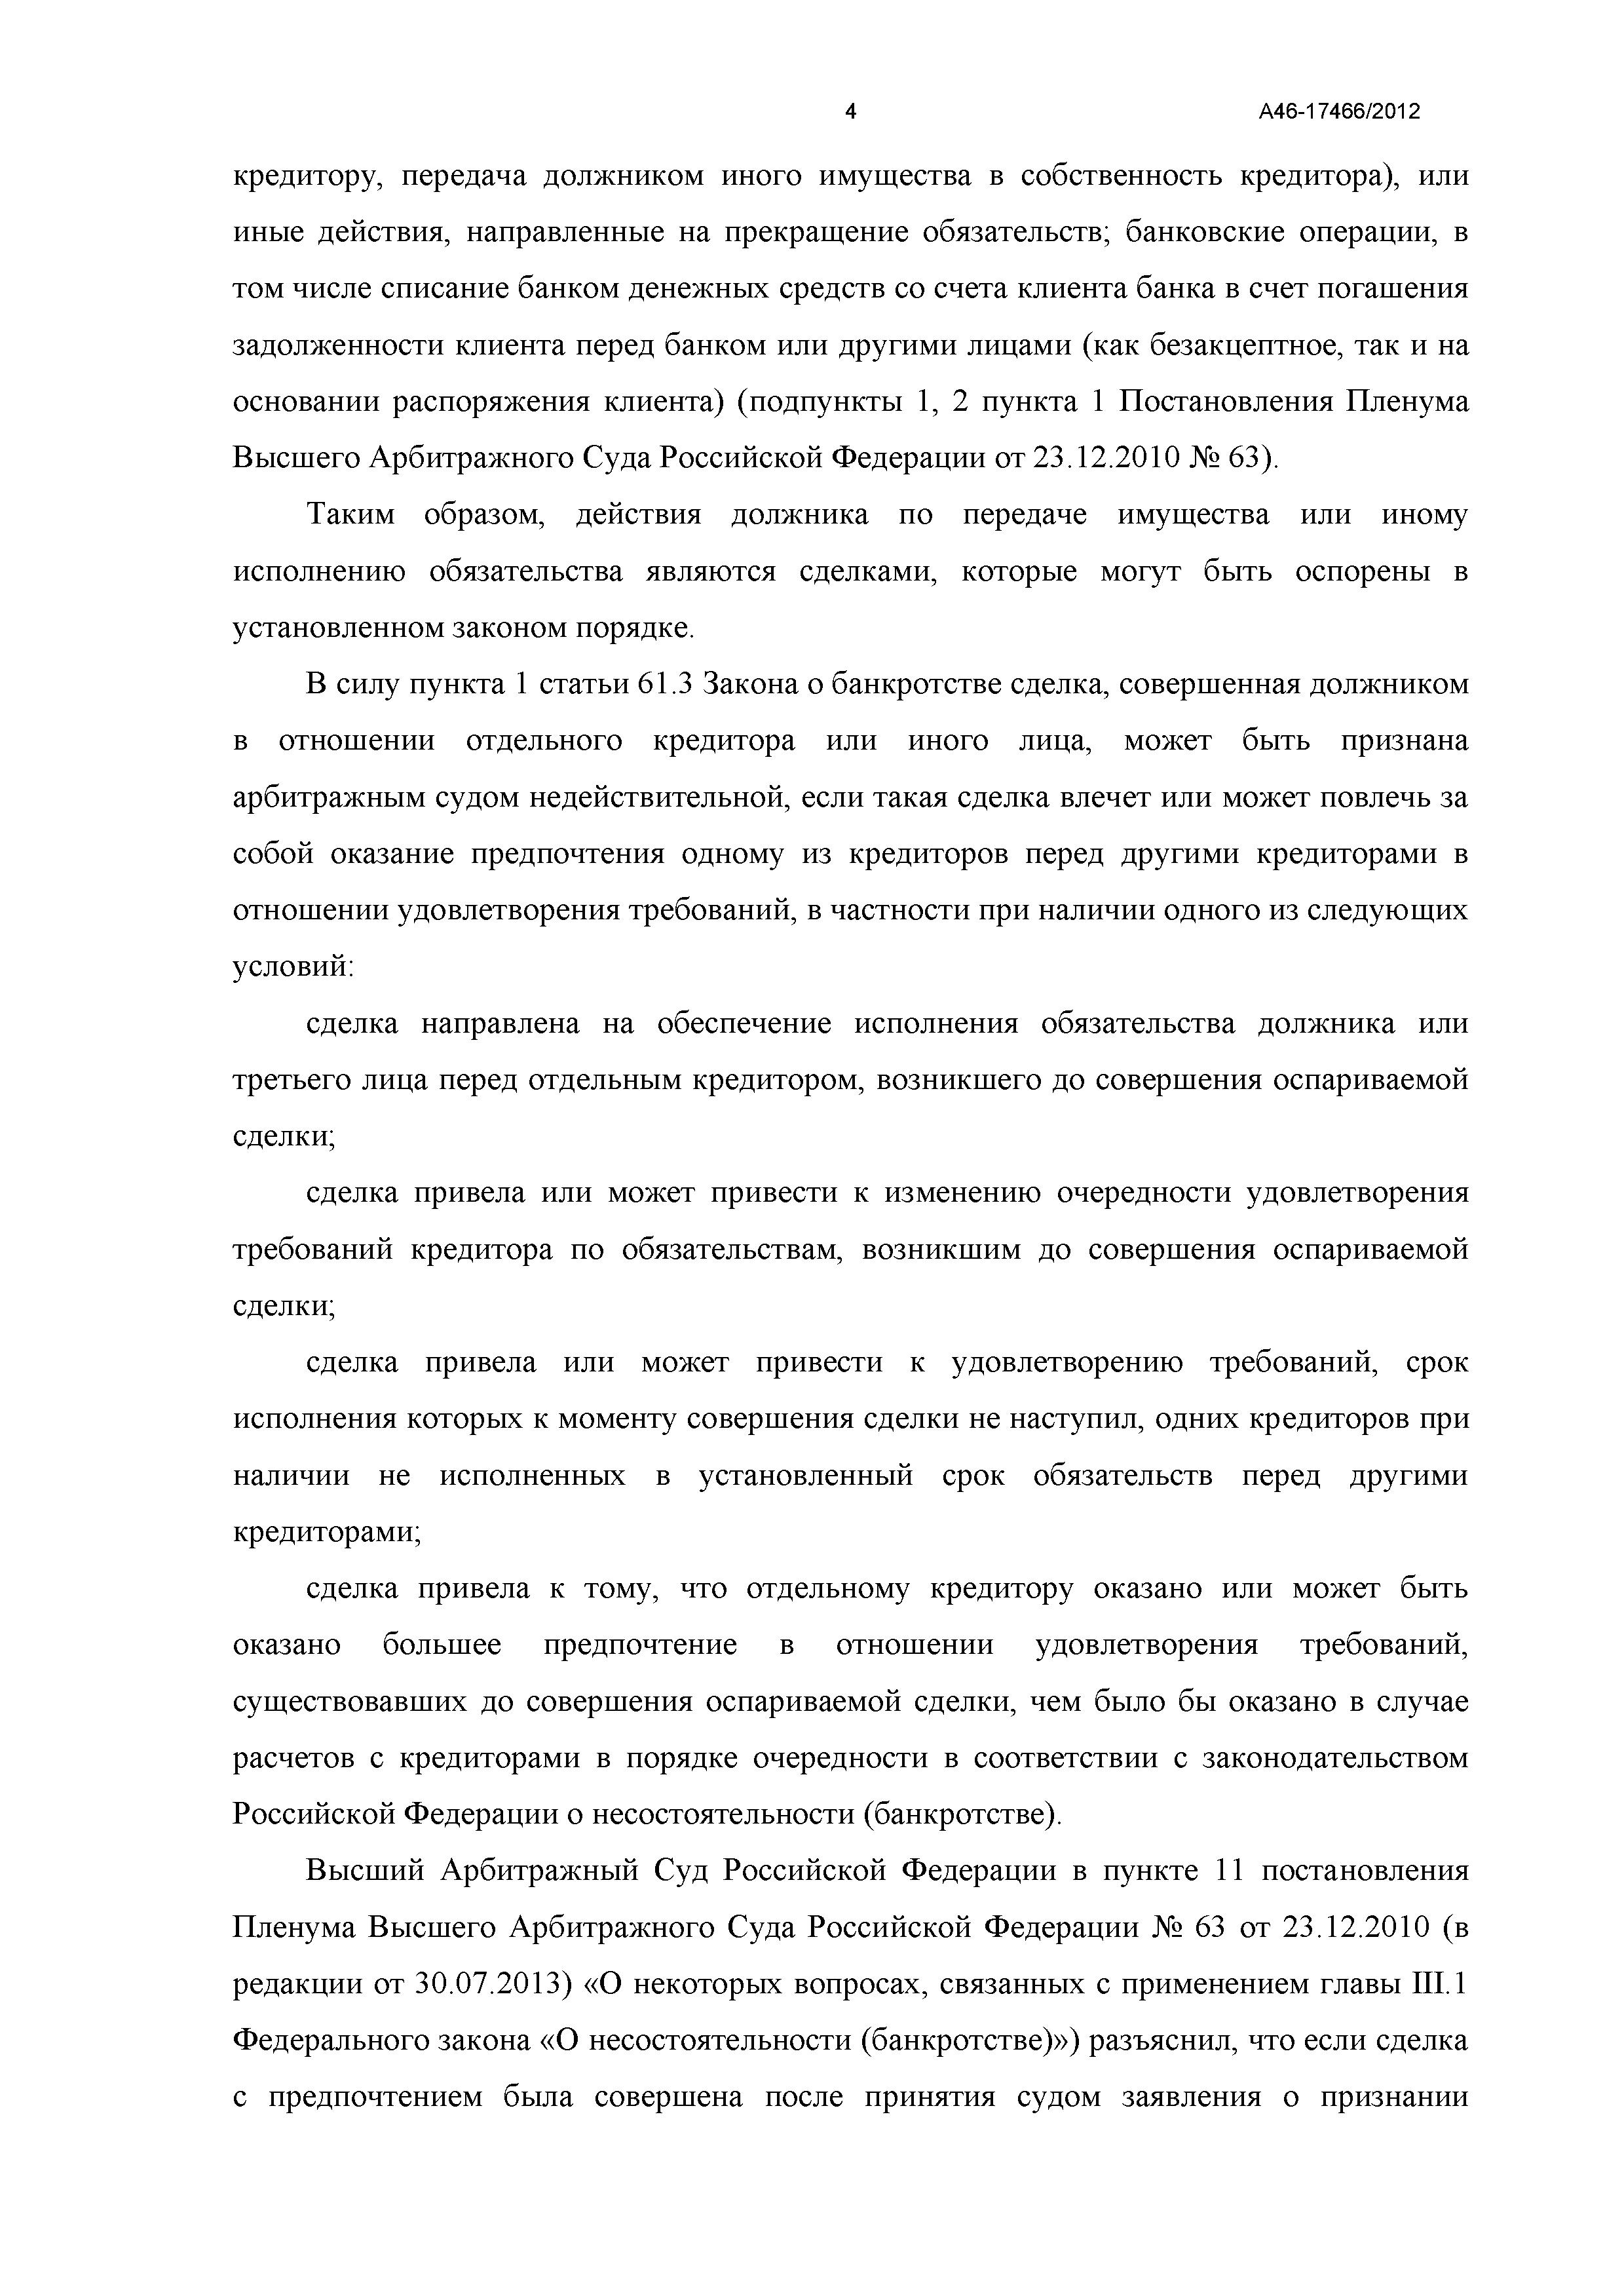 Дело №  А46-17466/2012- страница 4